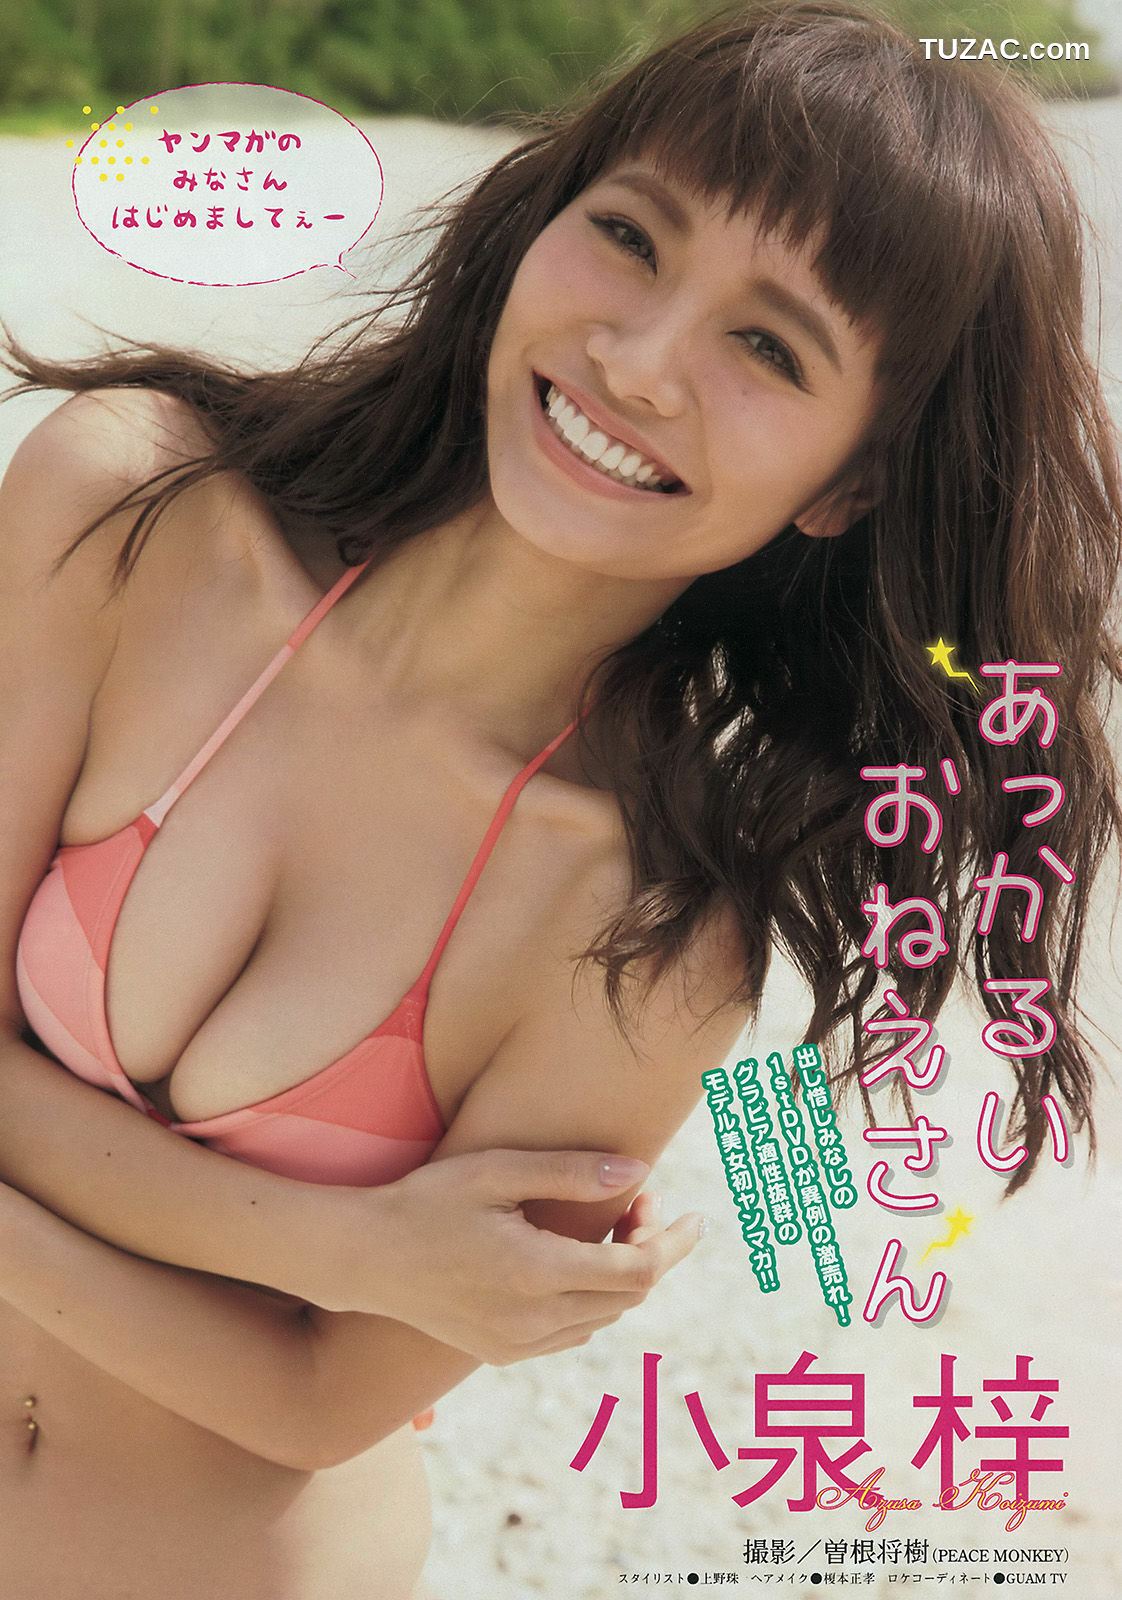 Young Magazine杂志写真_ 小泉梓 橘花凛 2014年No.43 写真杂志[11P]